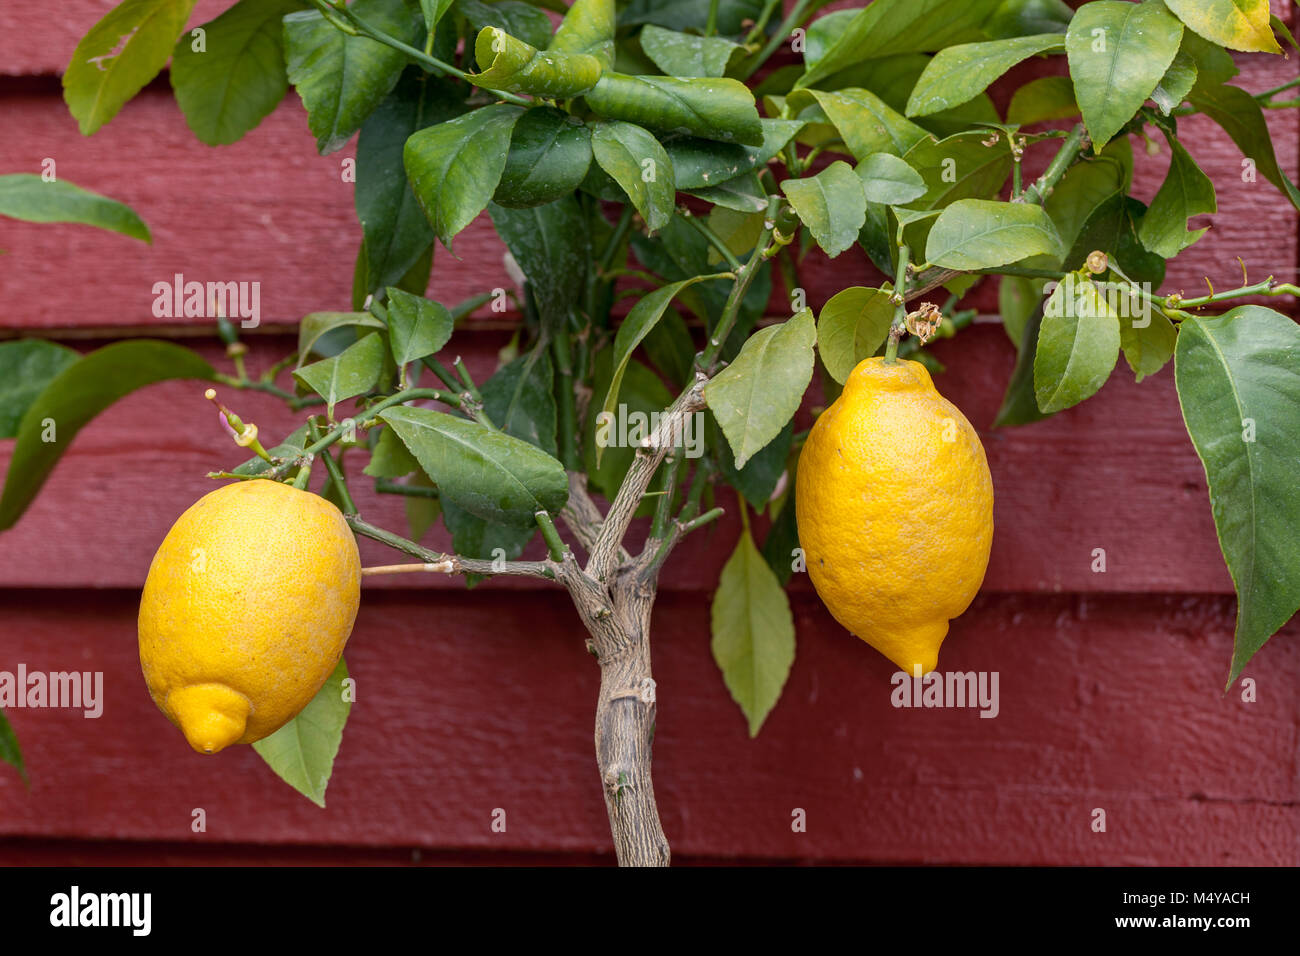 Lemon, Citron (Citrus limon) Stock Photo